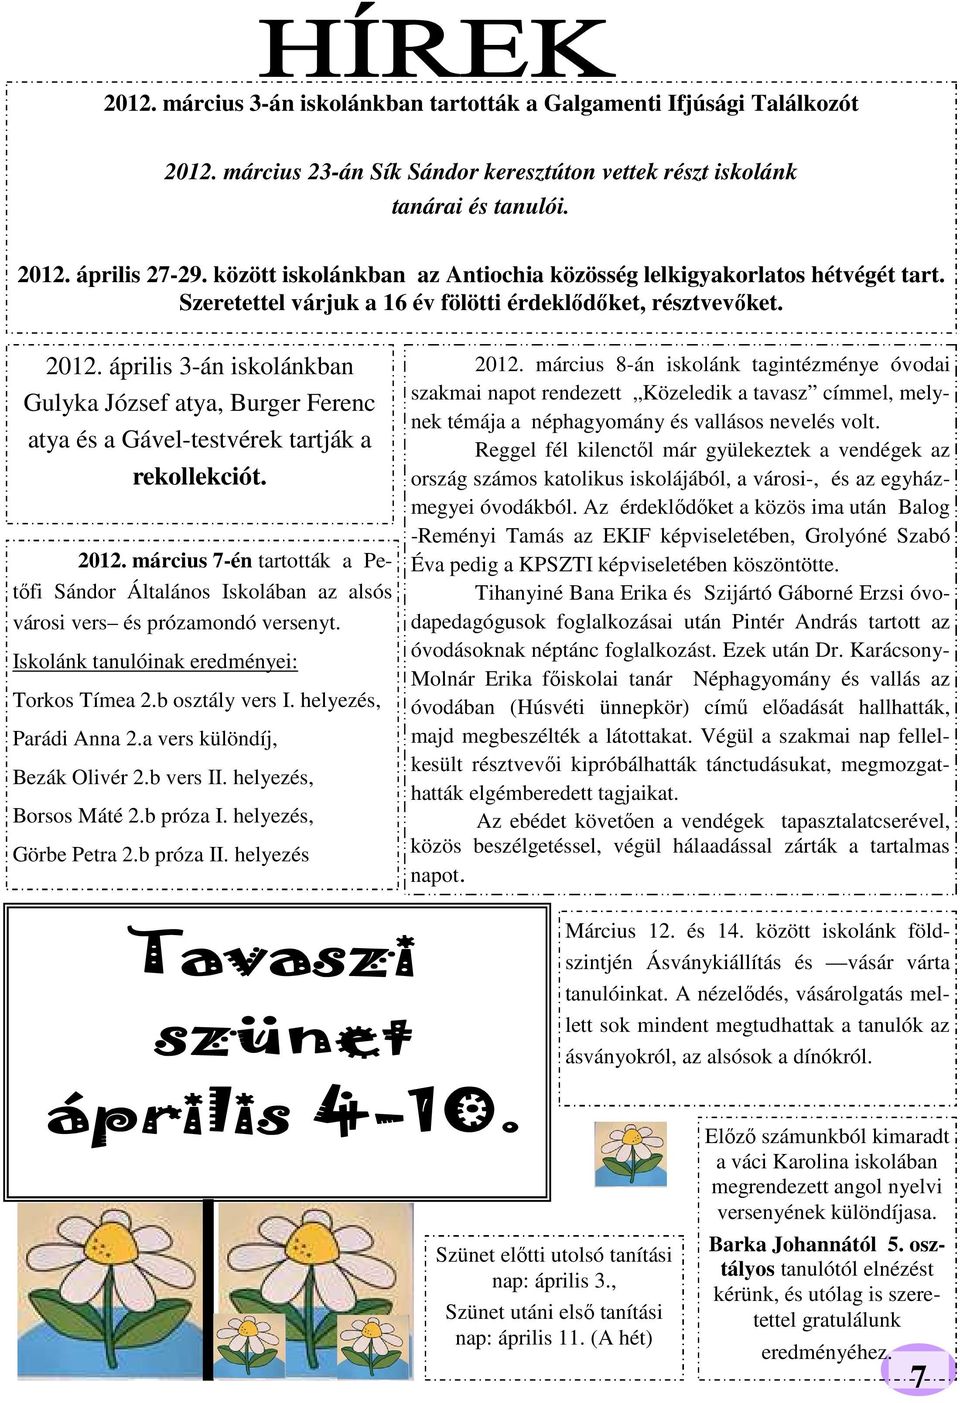 április 3-án iskolánkban Gulyka József atya, Burger Ferenc atya és a Gável-testvérek tartják a rekollekciót. 2012.